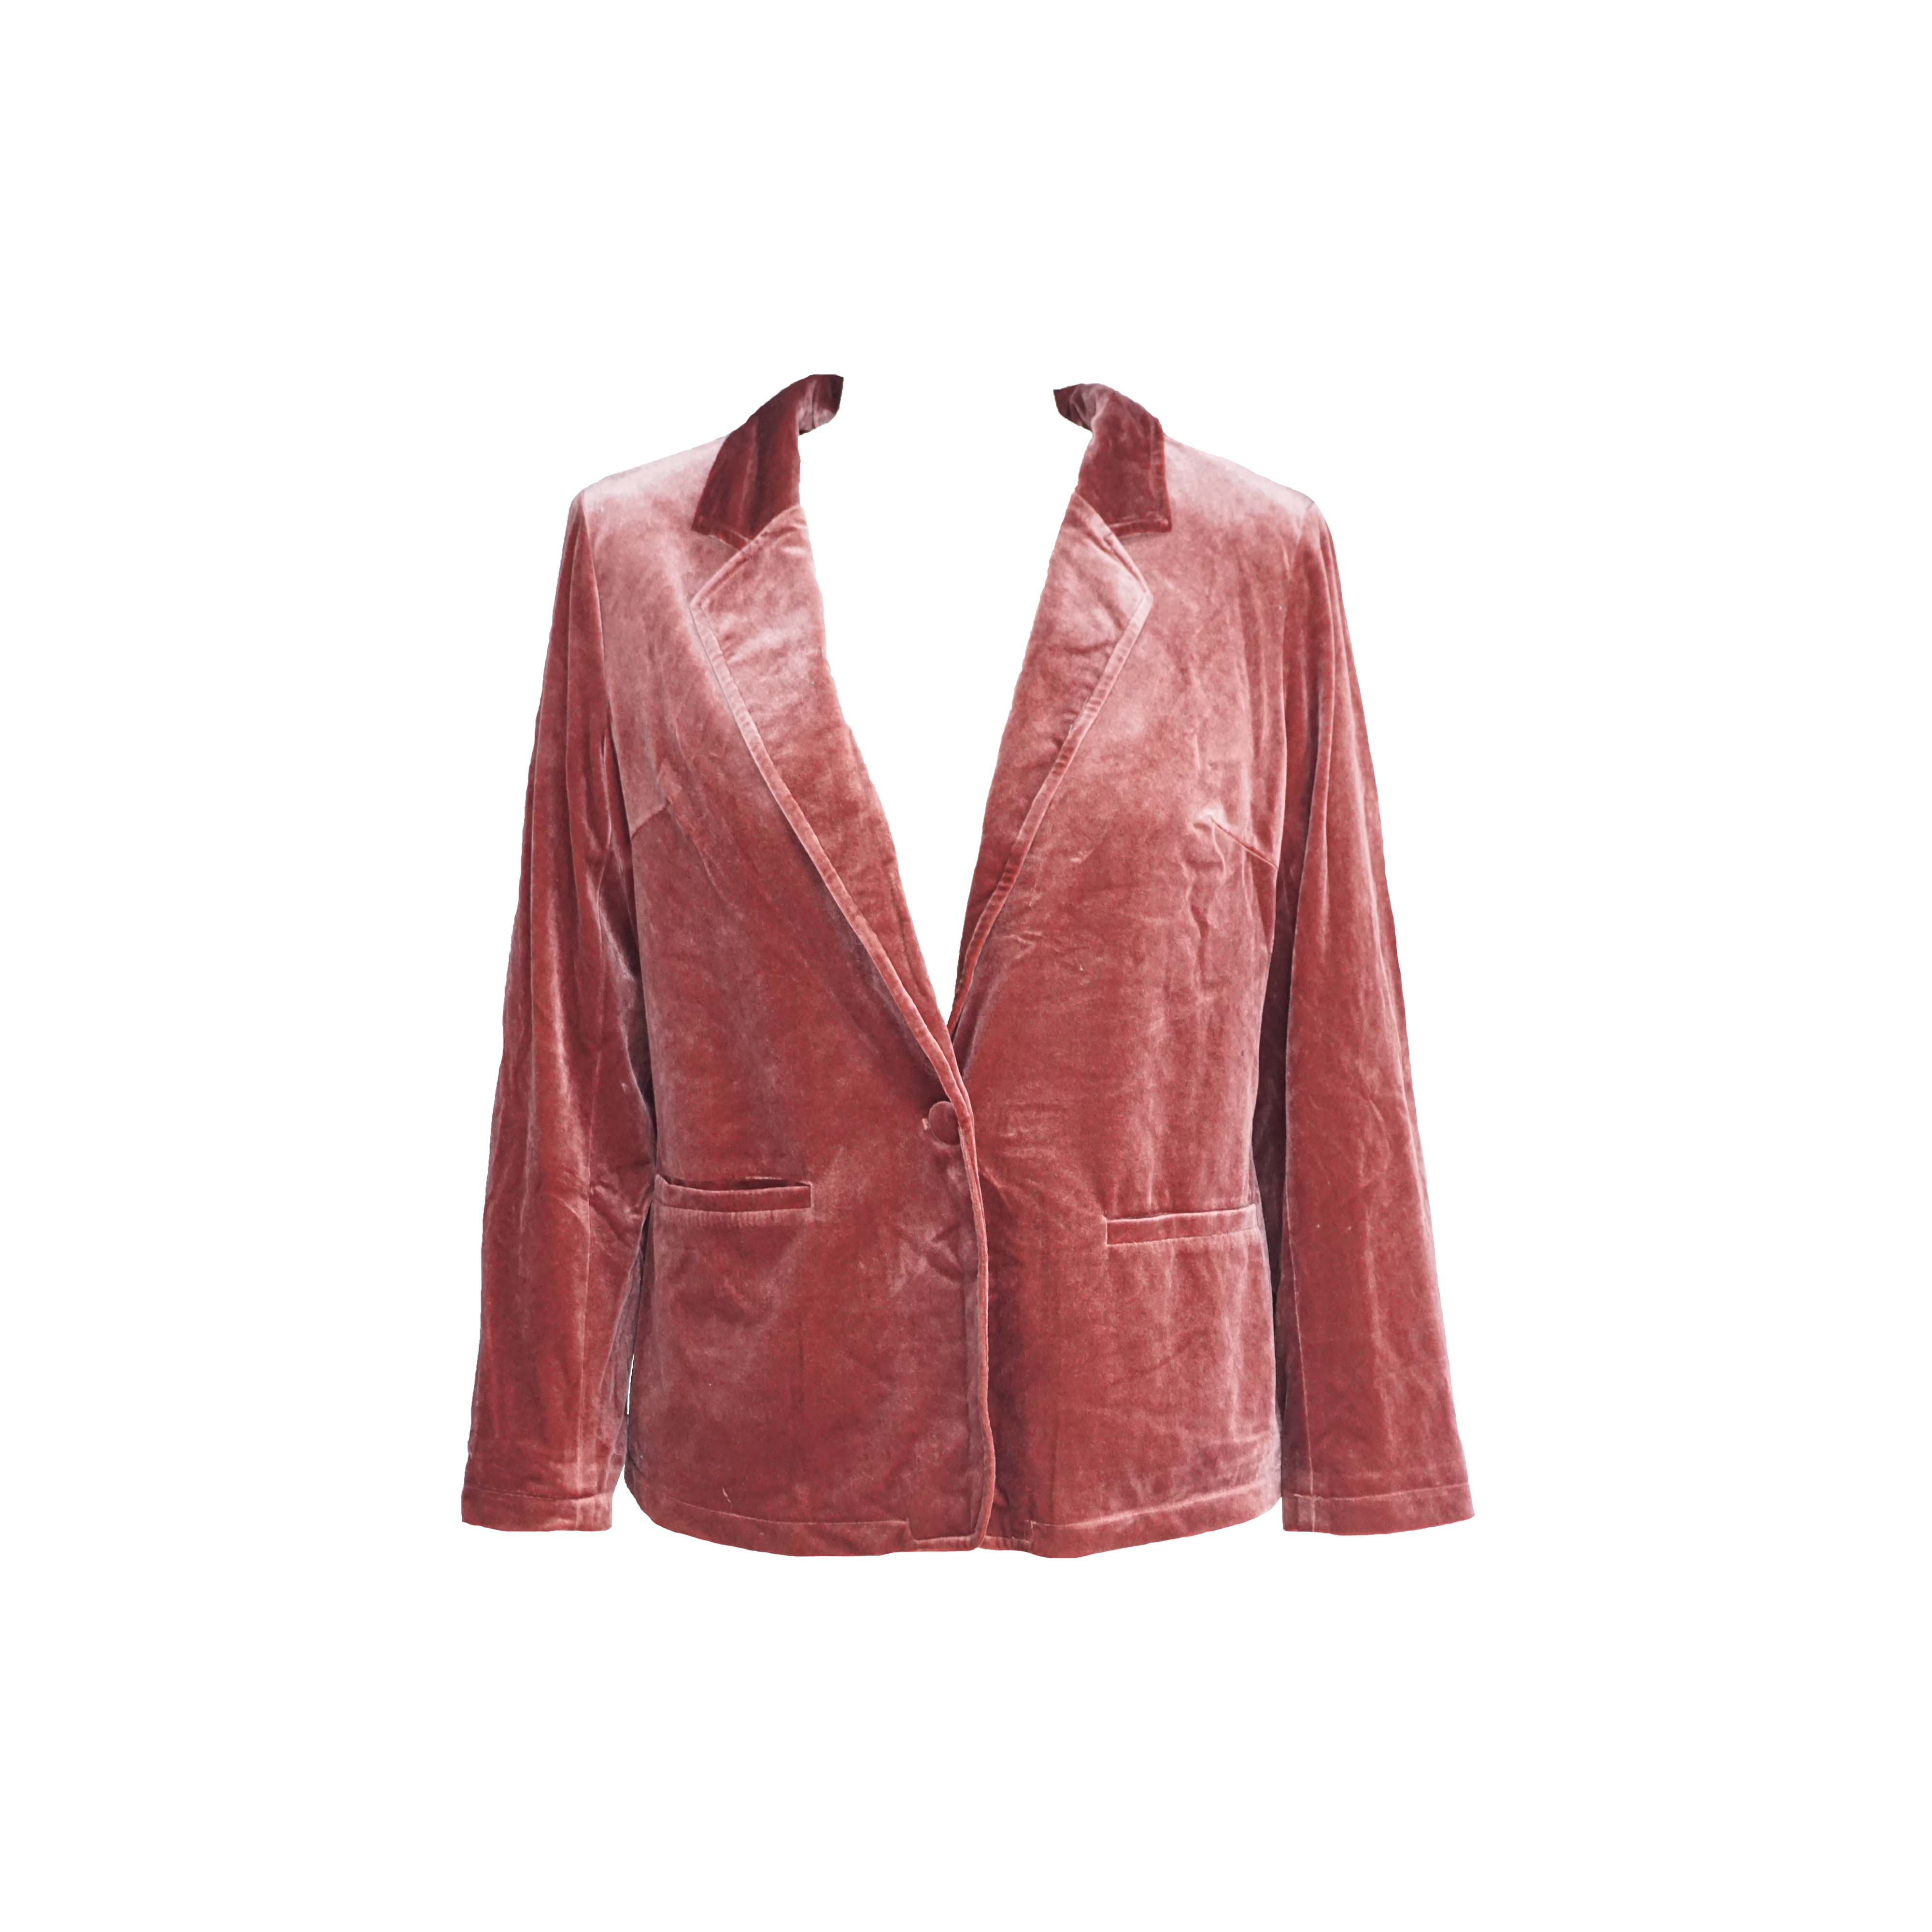 कोरियन मखमली गुलाबी सूट कोट